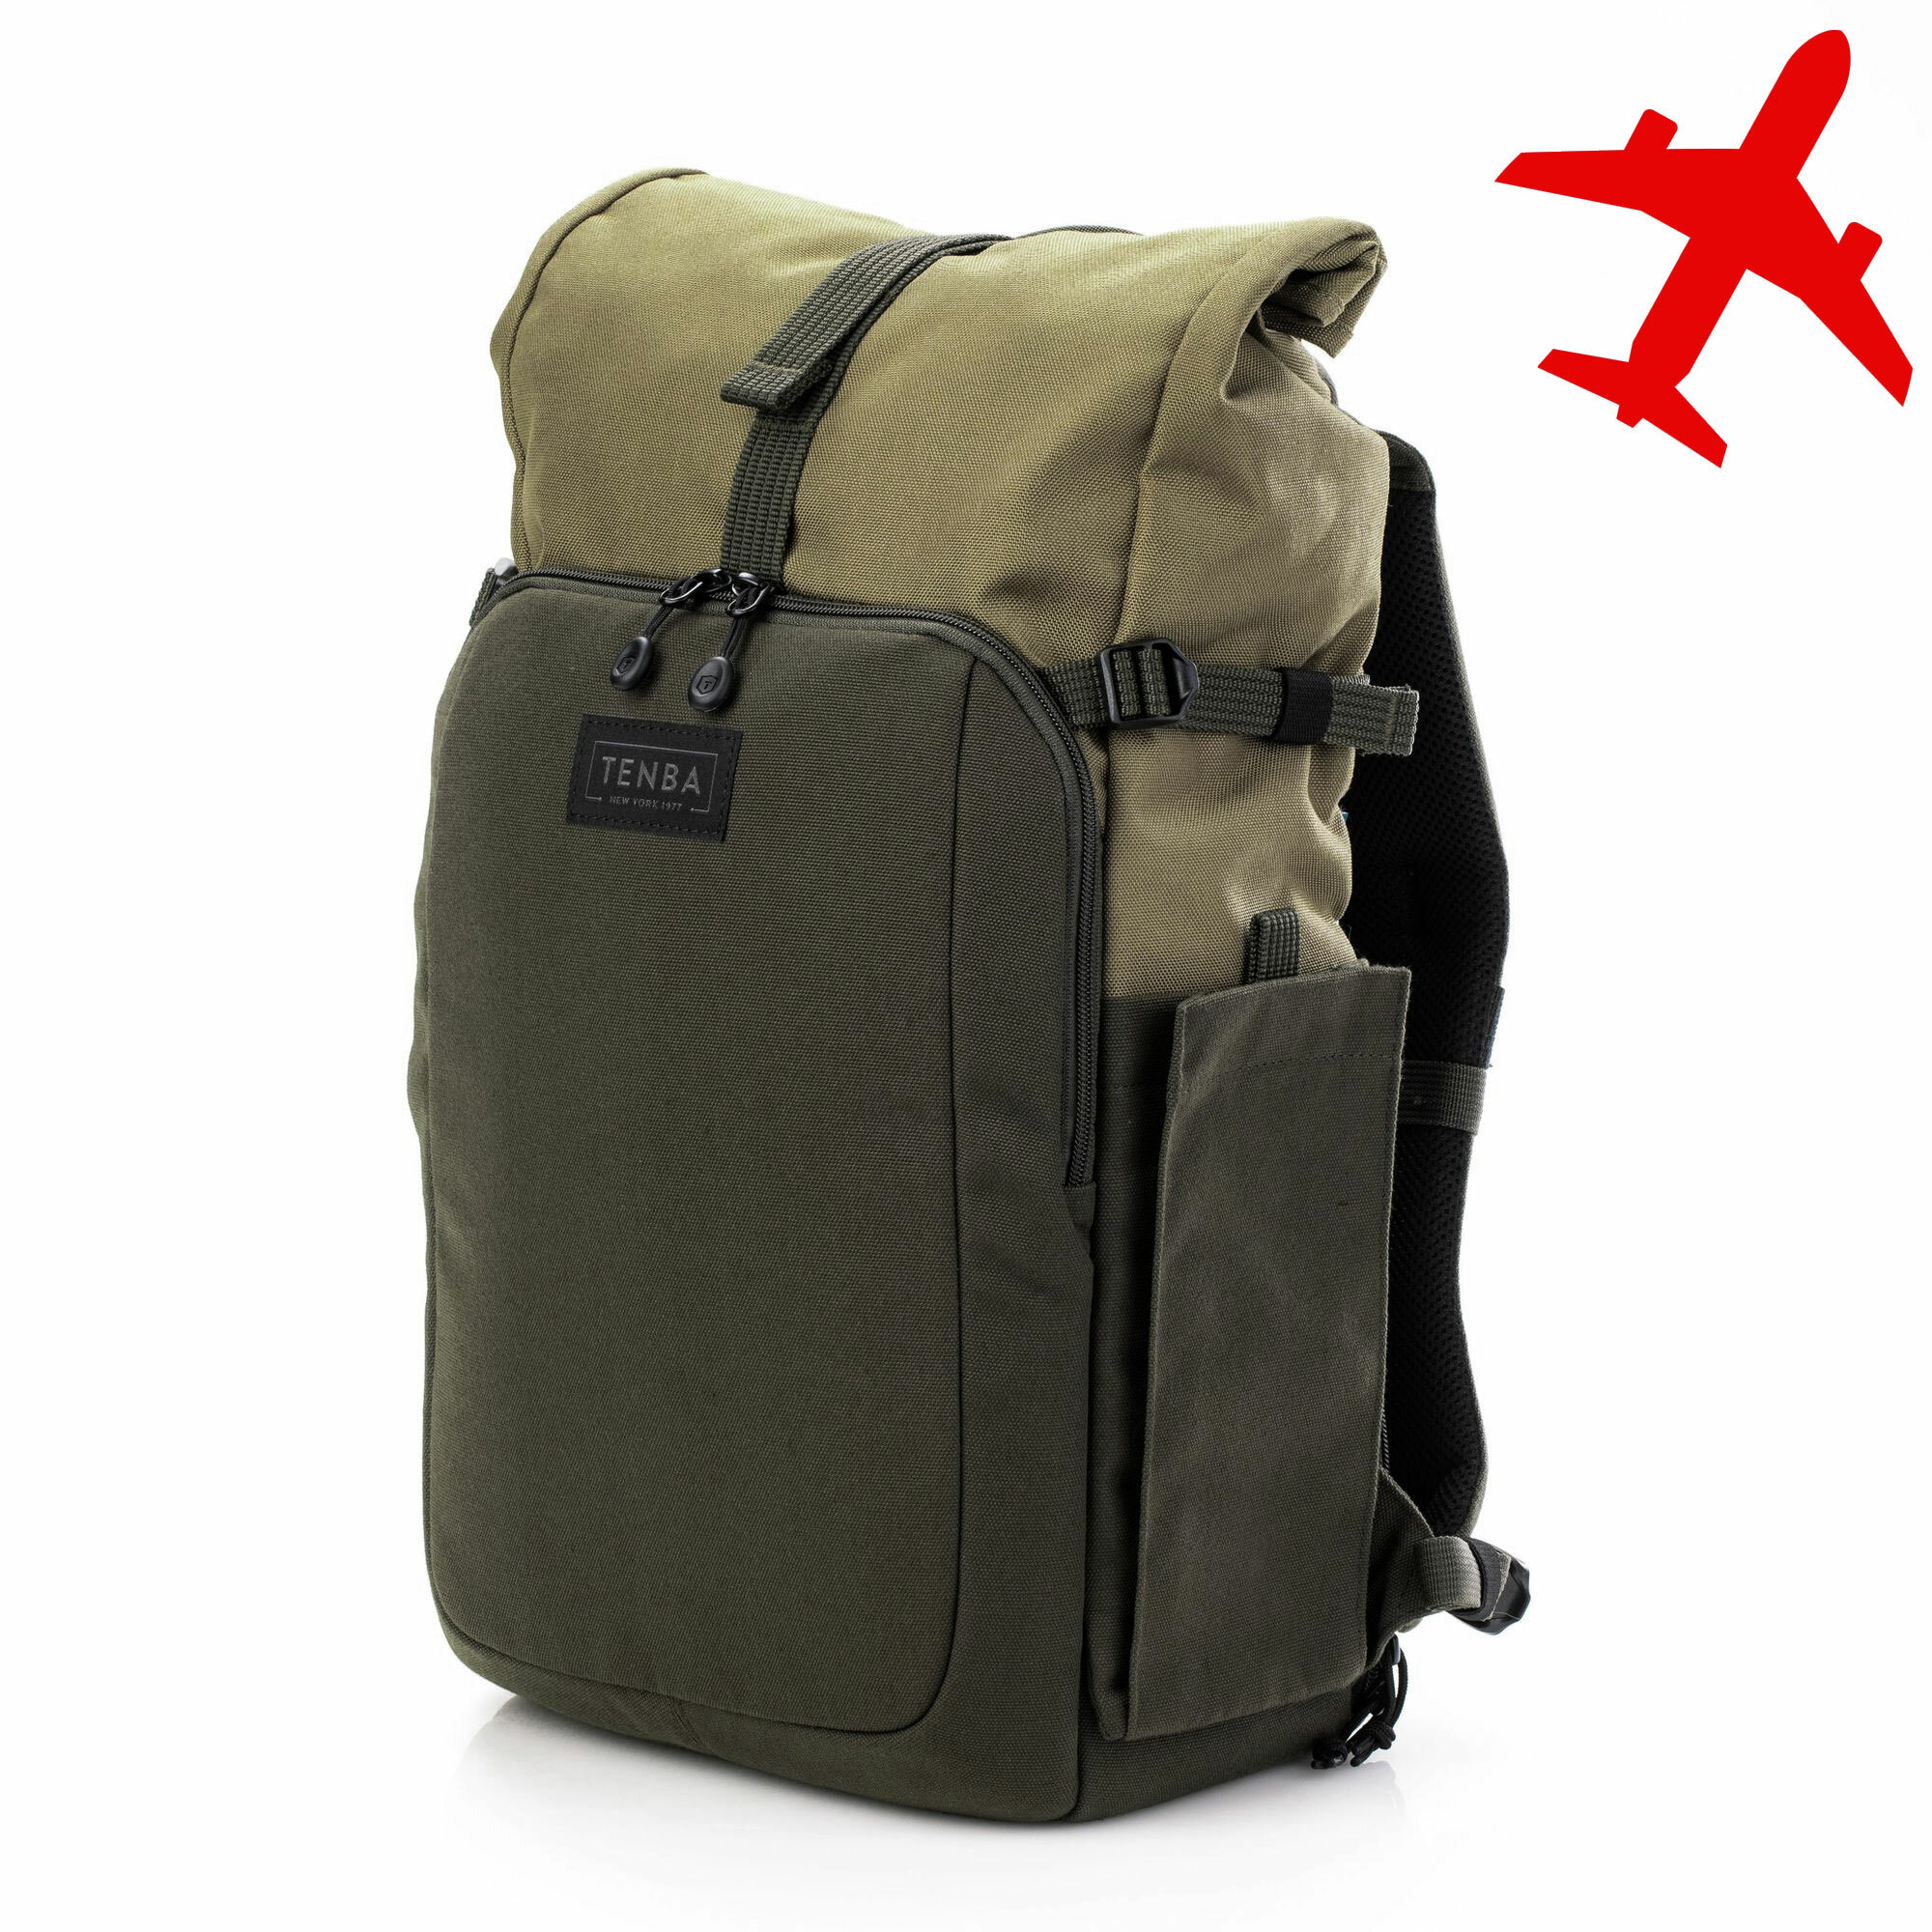 Рюкзак Tenba Fulton v2 14L Backpack Tan/Olive для фототехники